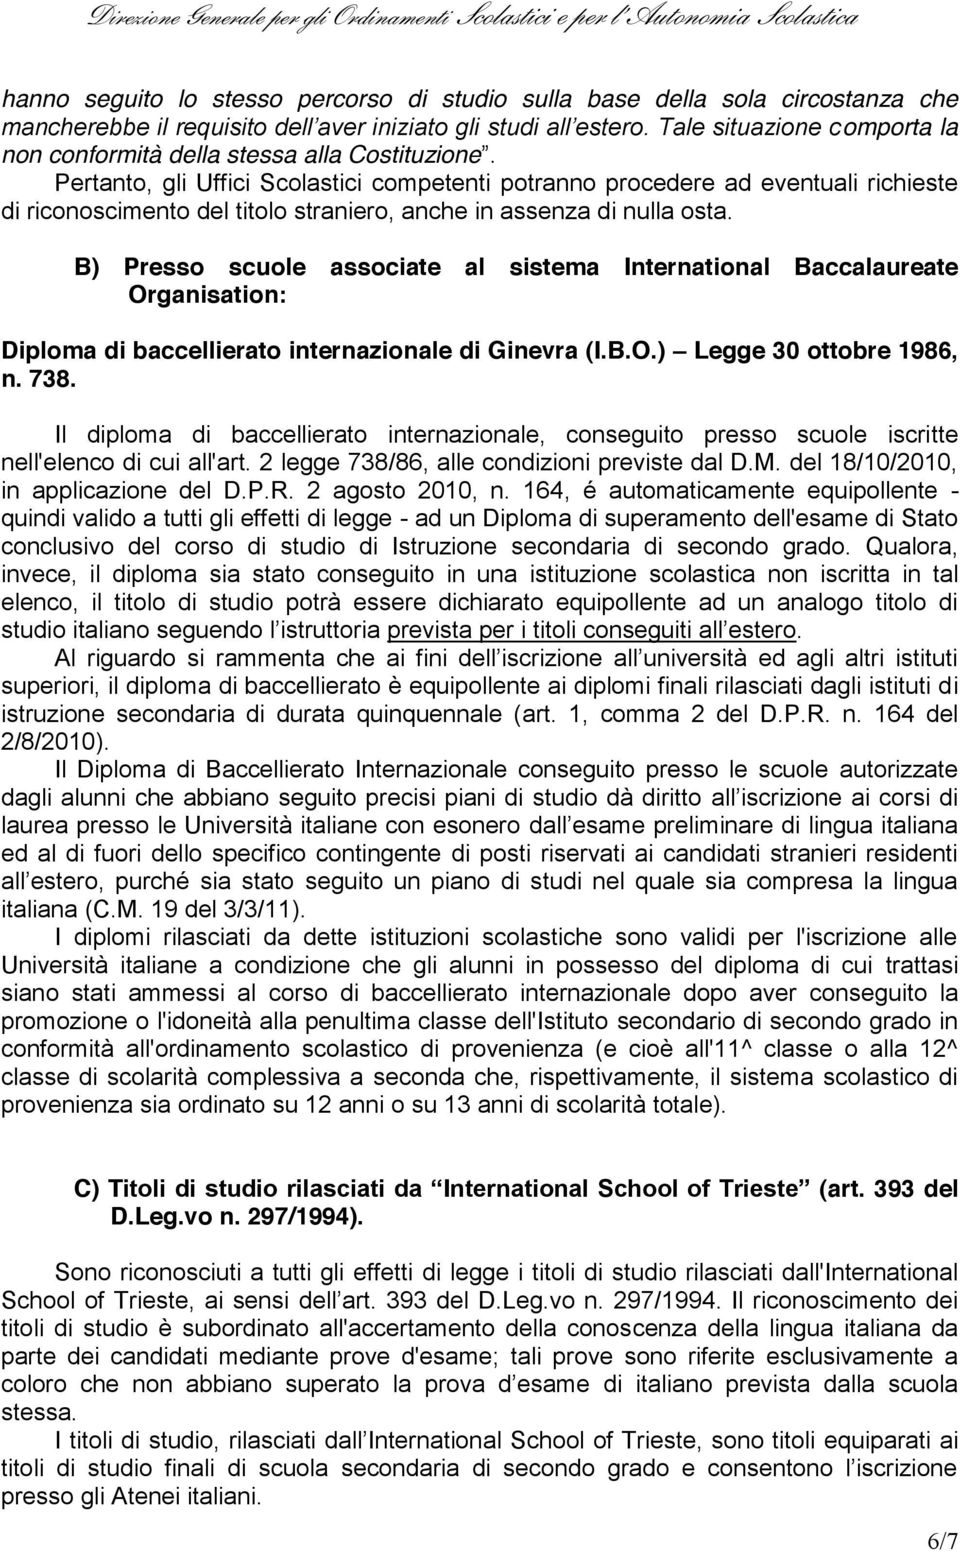 B) Presso scuole associate al sistema International Baccalaureate Organisation: Diploma di baccellierato internazionale di Ginevra (I.B.O.) Legge 30 ottobre 1986, n. 738.